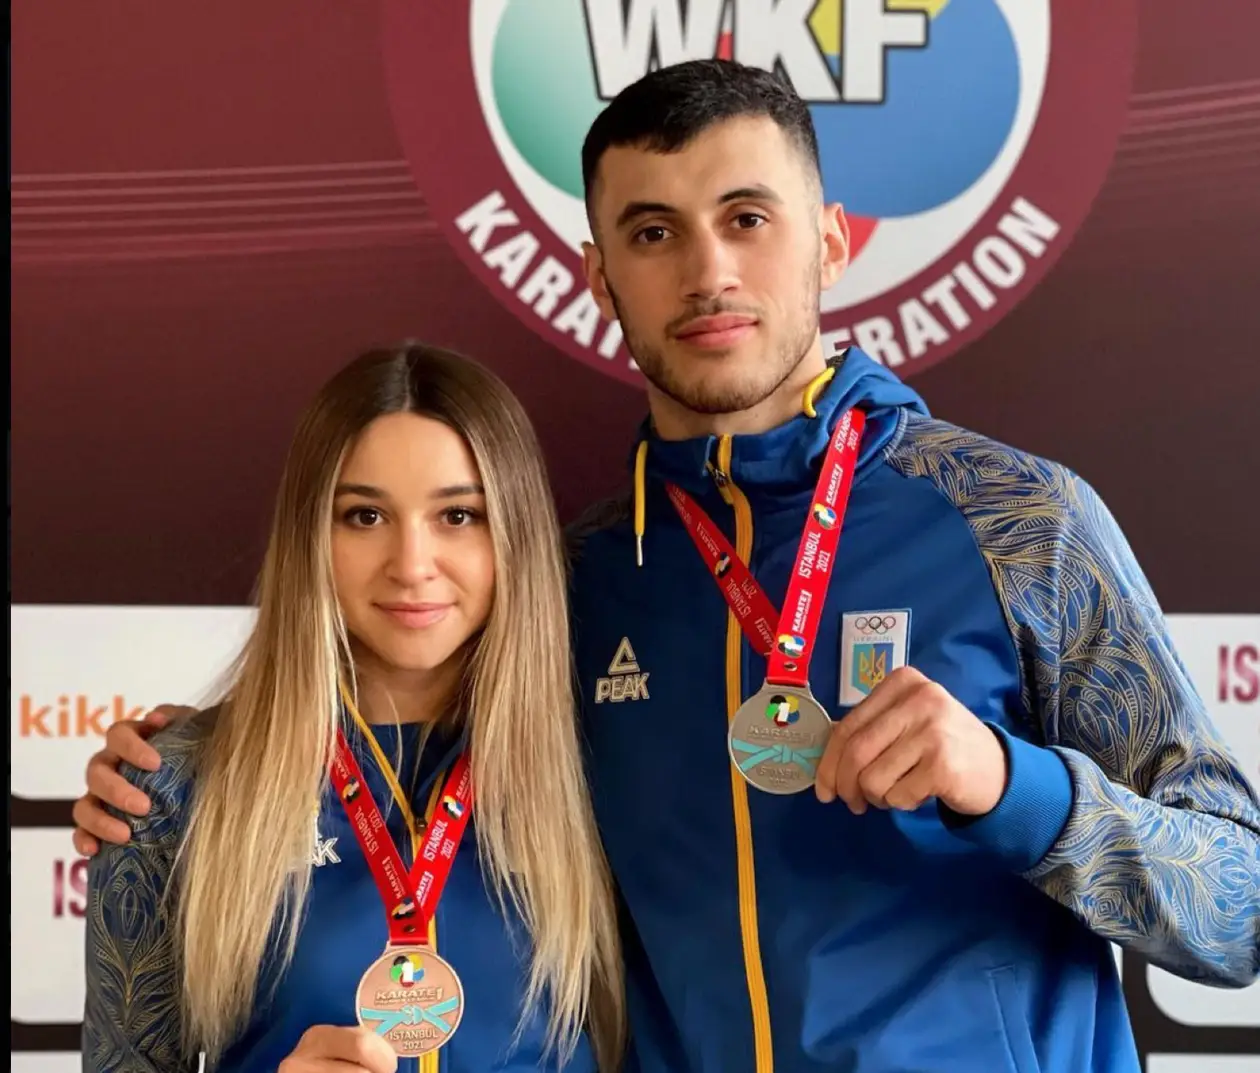 Терлюга и Талибов завоевали медали на турнире в Стамбуле. Это первый крупный турнир по каратэ с марта 2020 года